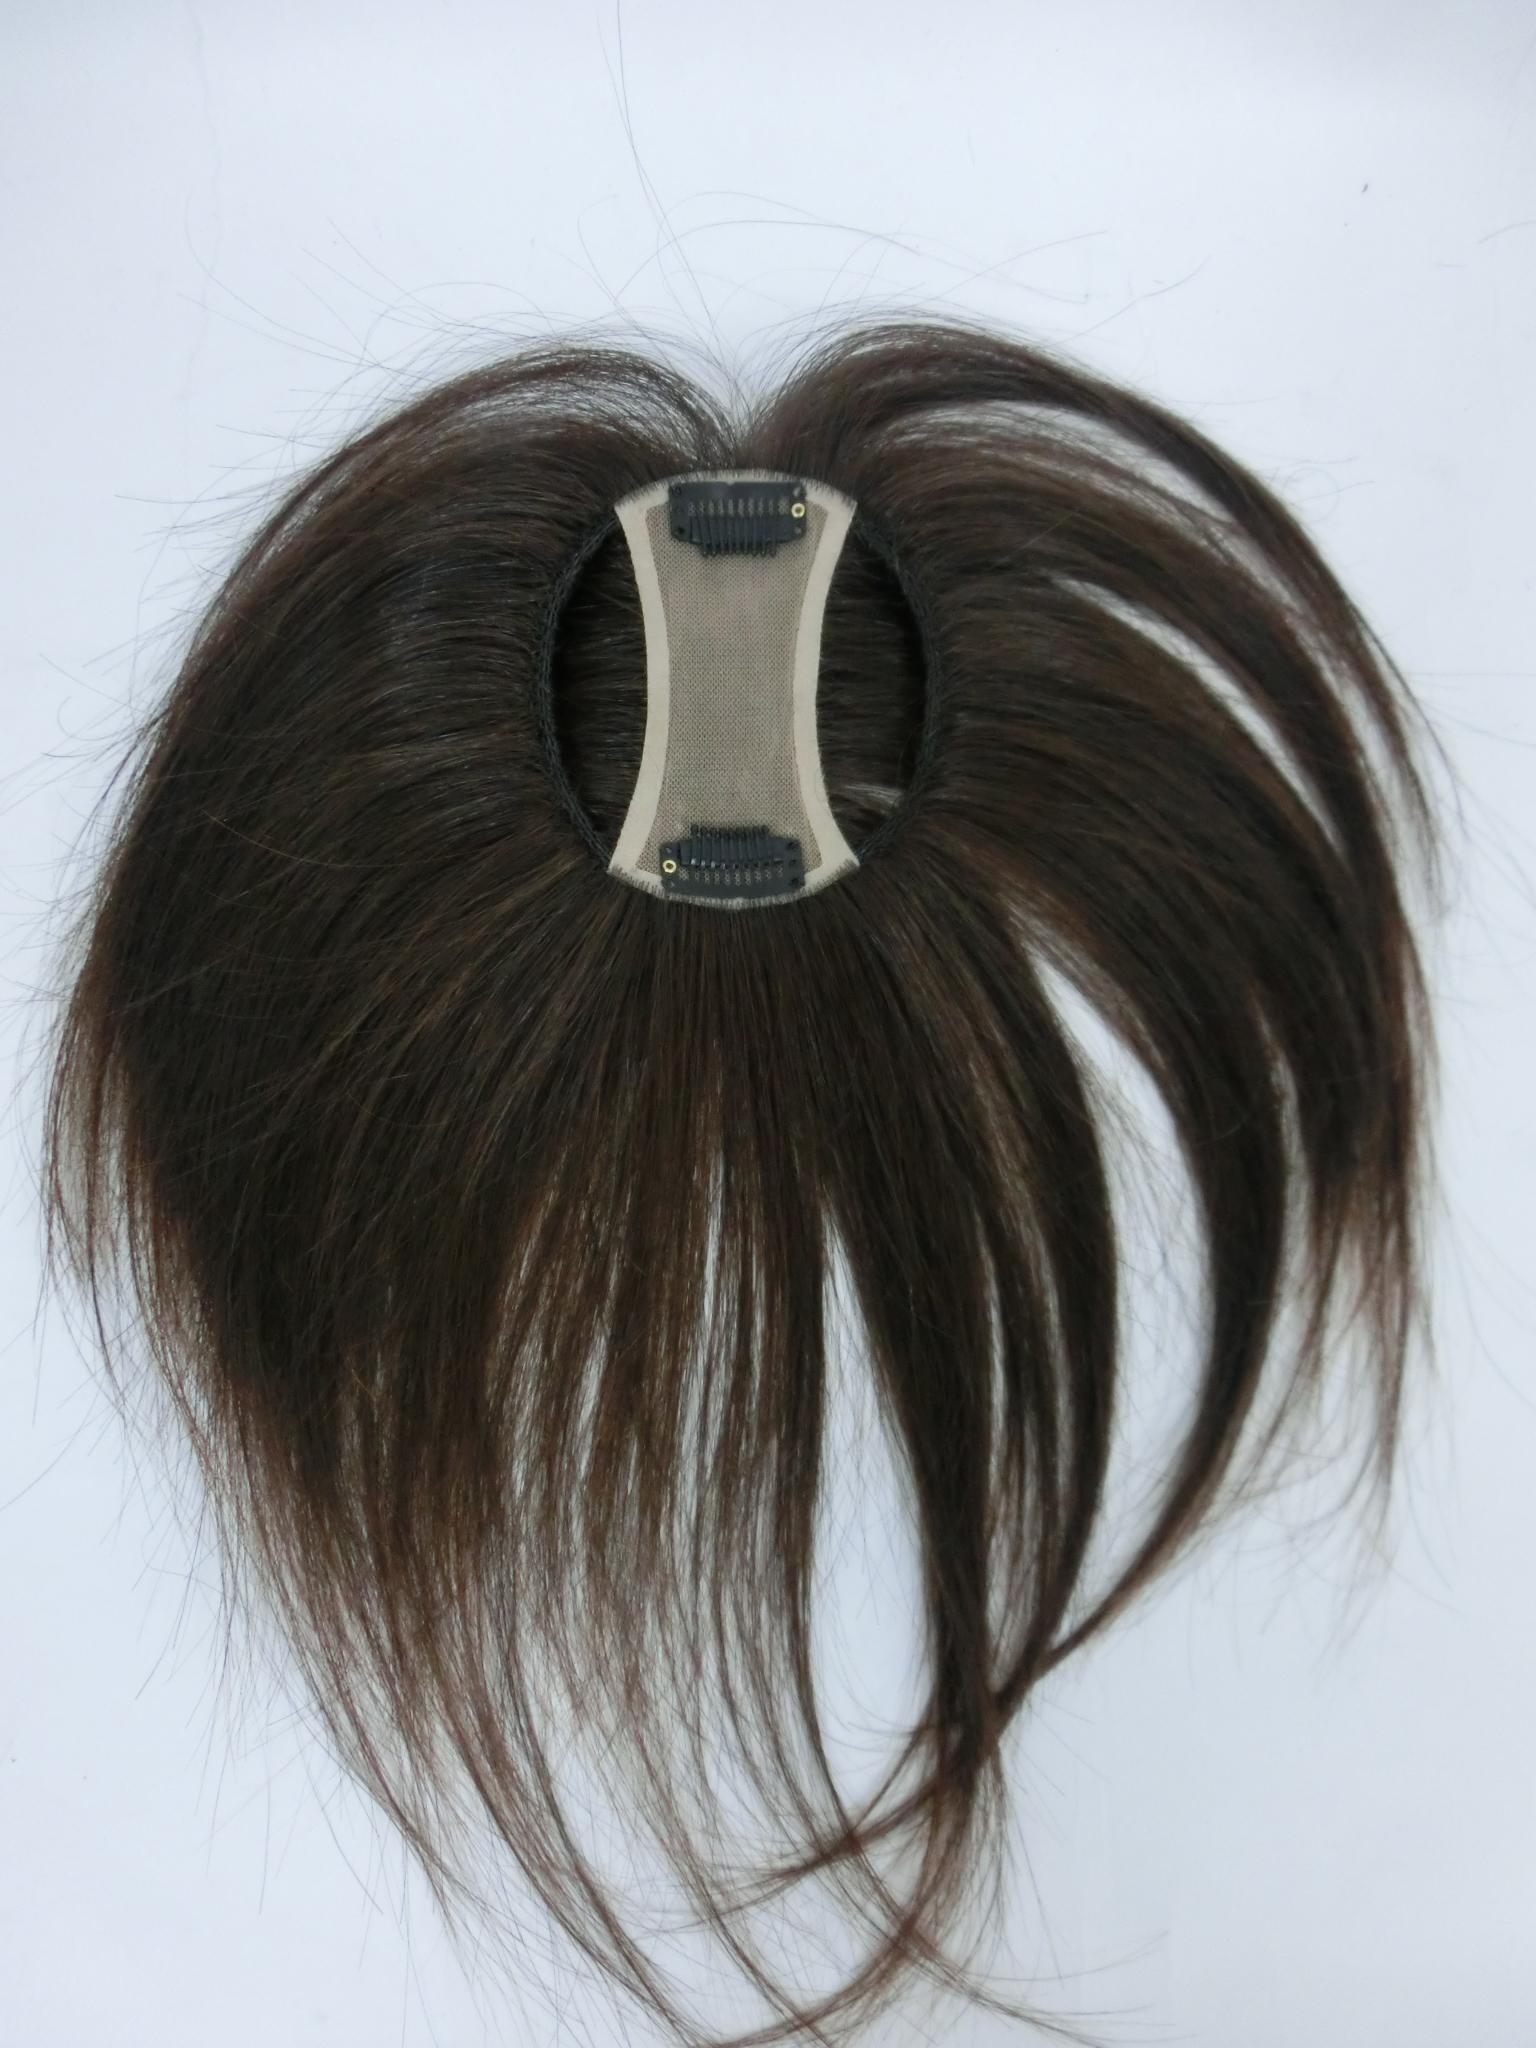 ナチュラルスタイル 自毛で作るかつら 自分の髪でつくる分け目カバー 自毛引き出しタイプのヘアピースtp30仕様 型番 K287 ナチュラル株式会社ショッピングカート